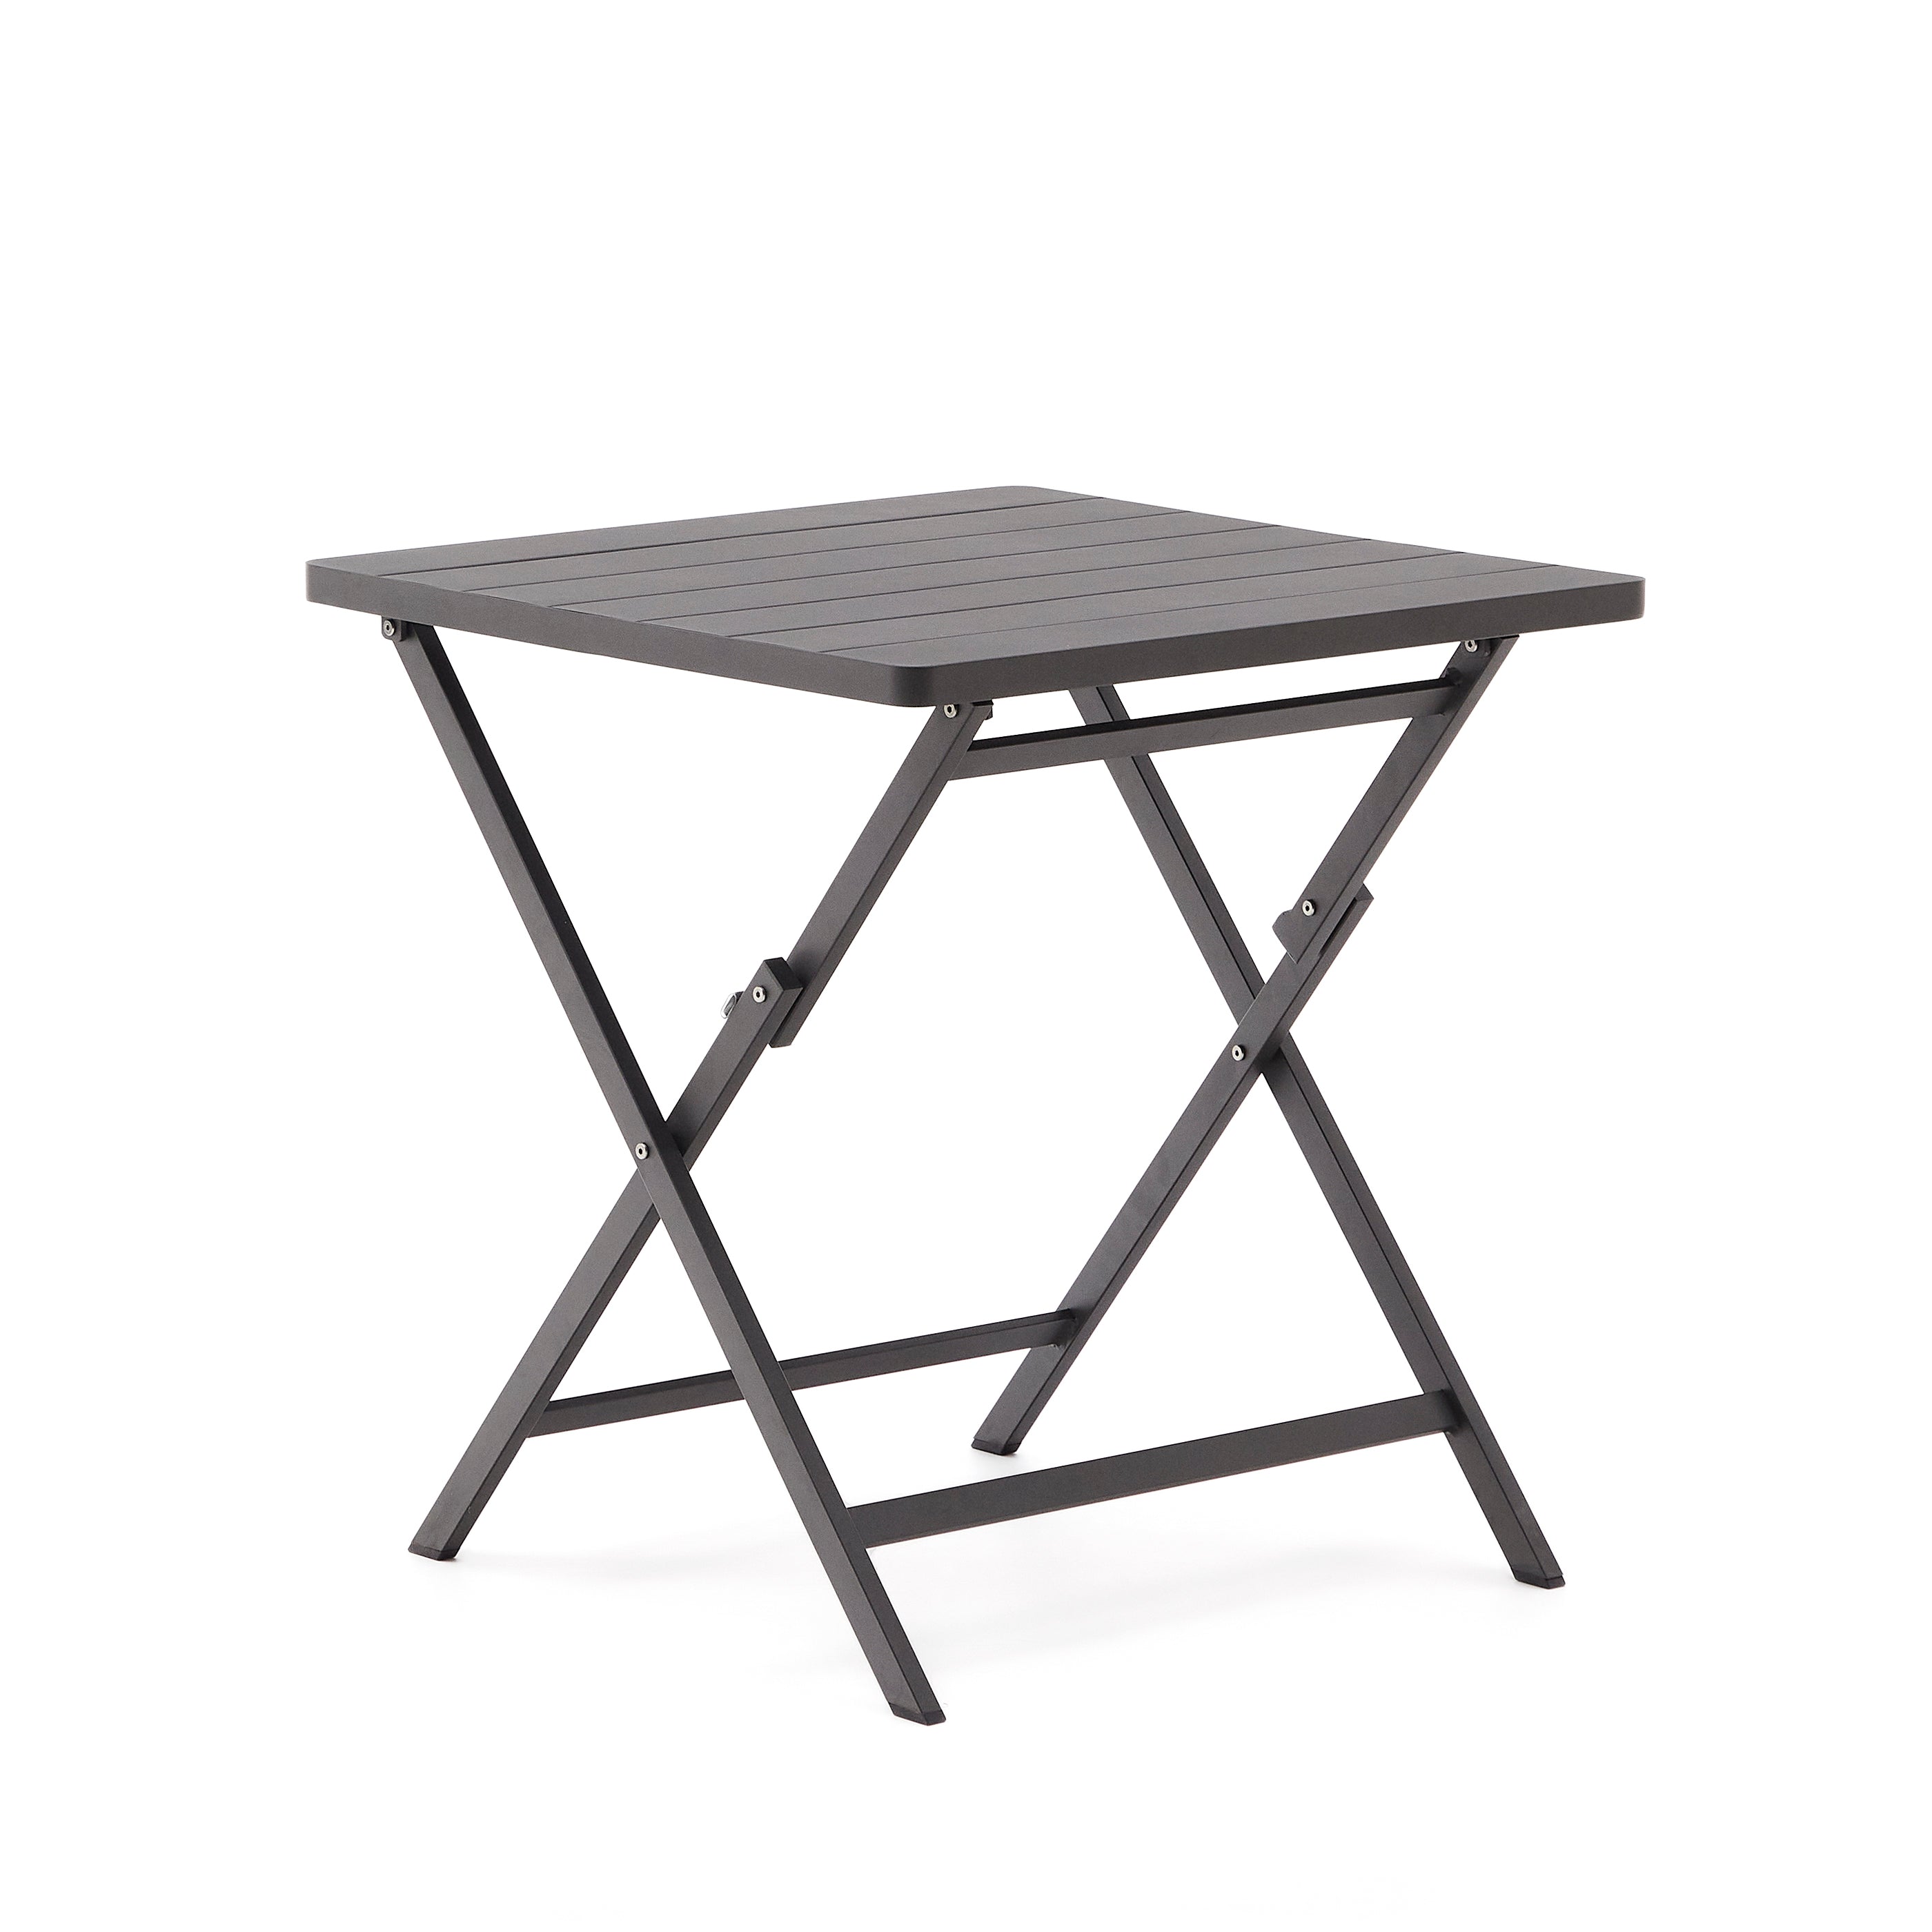 Torreta összecsukható kültéri asztal alumíniumból, fekete bevonattal, 70 x 70 cm